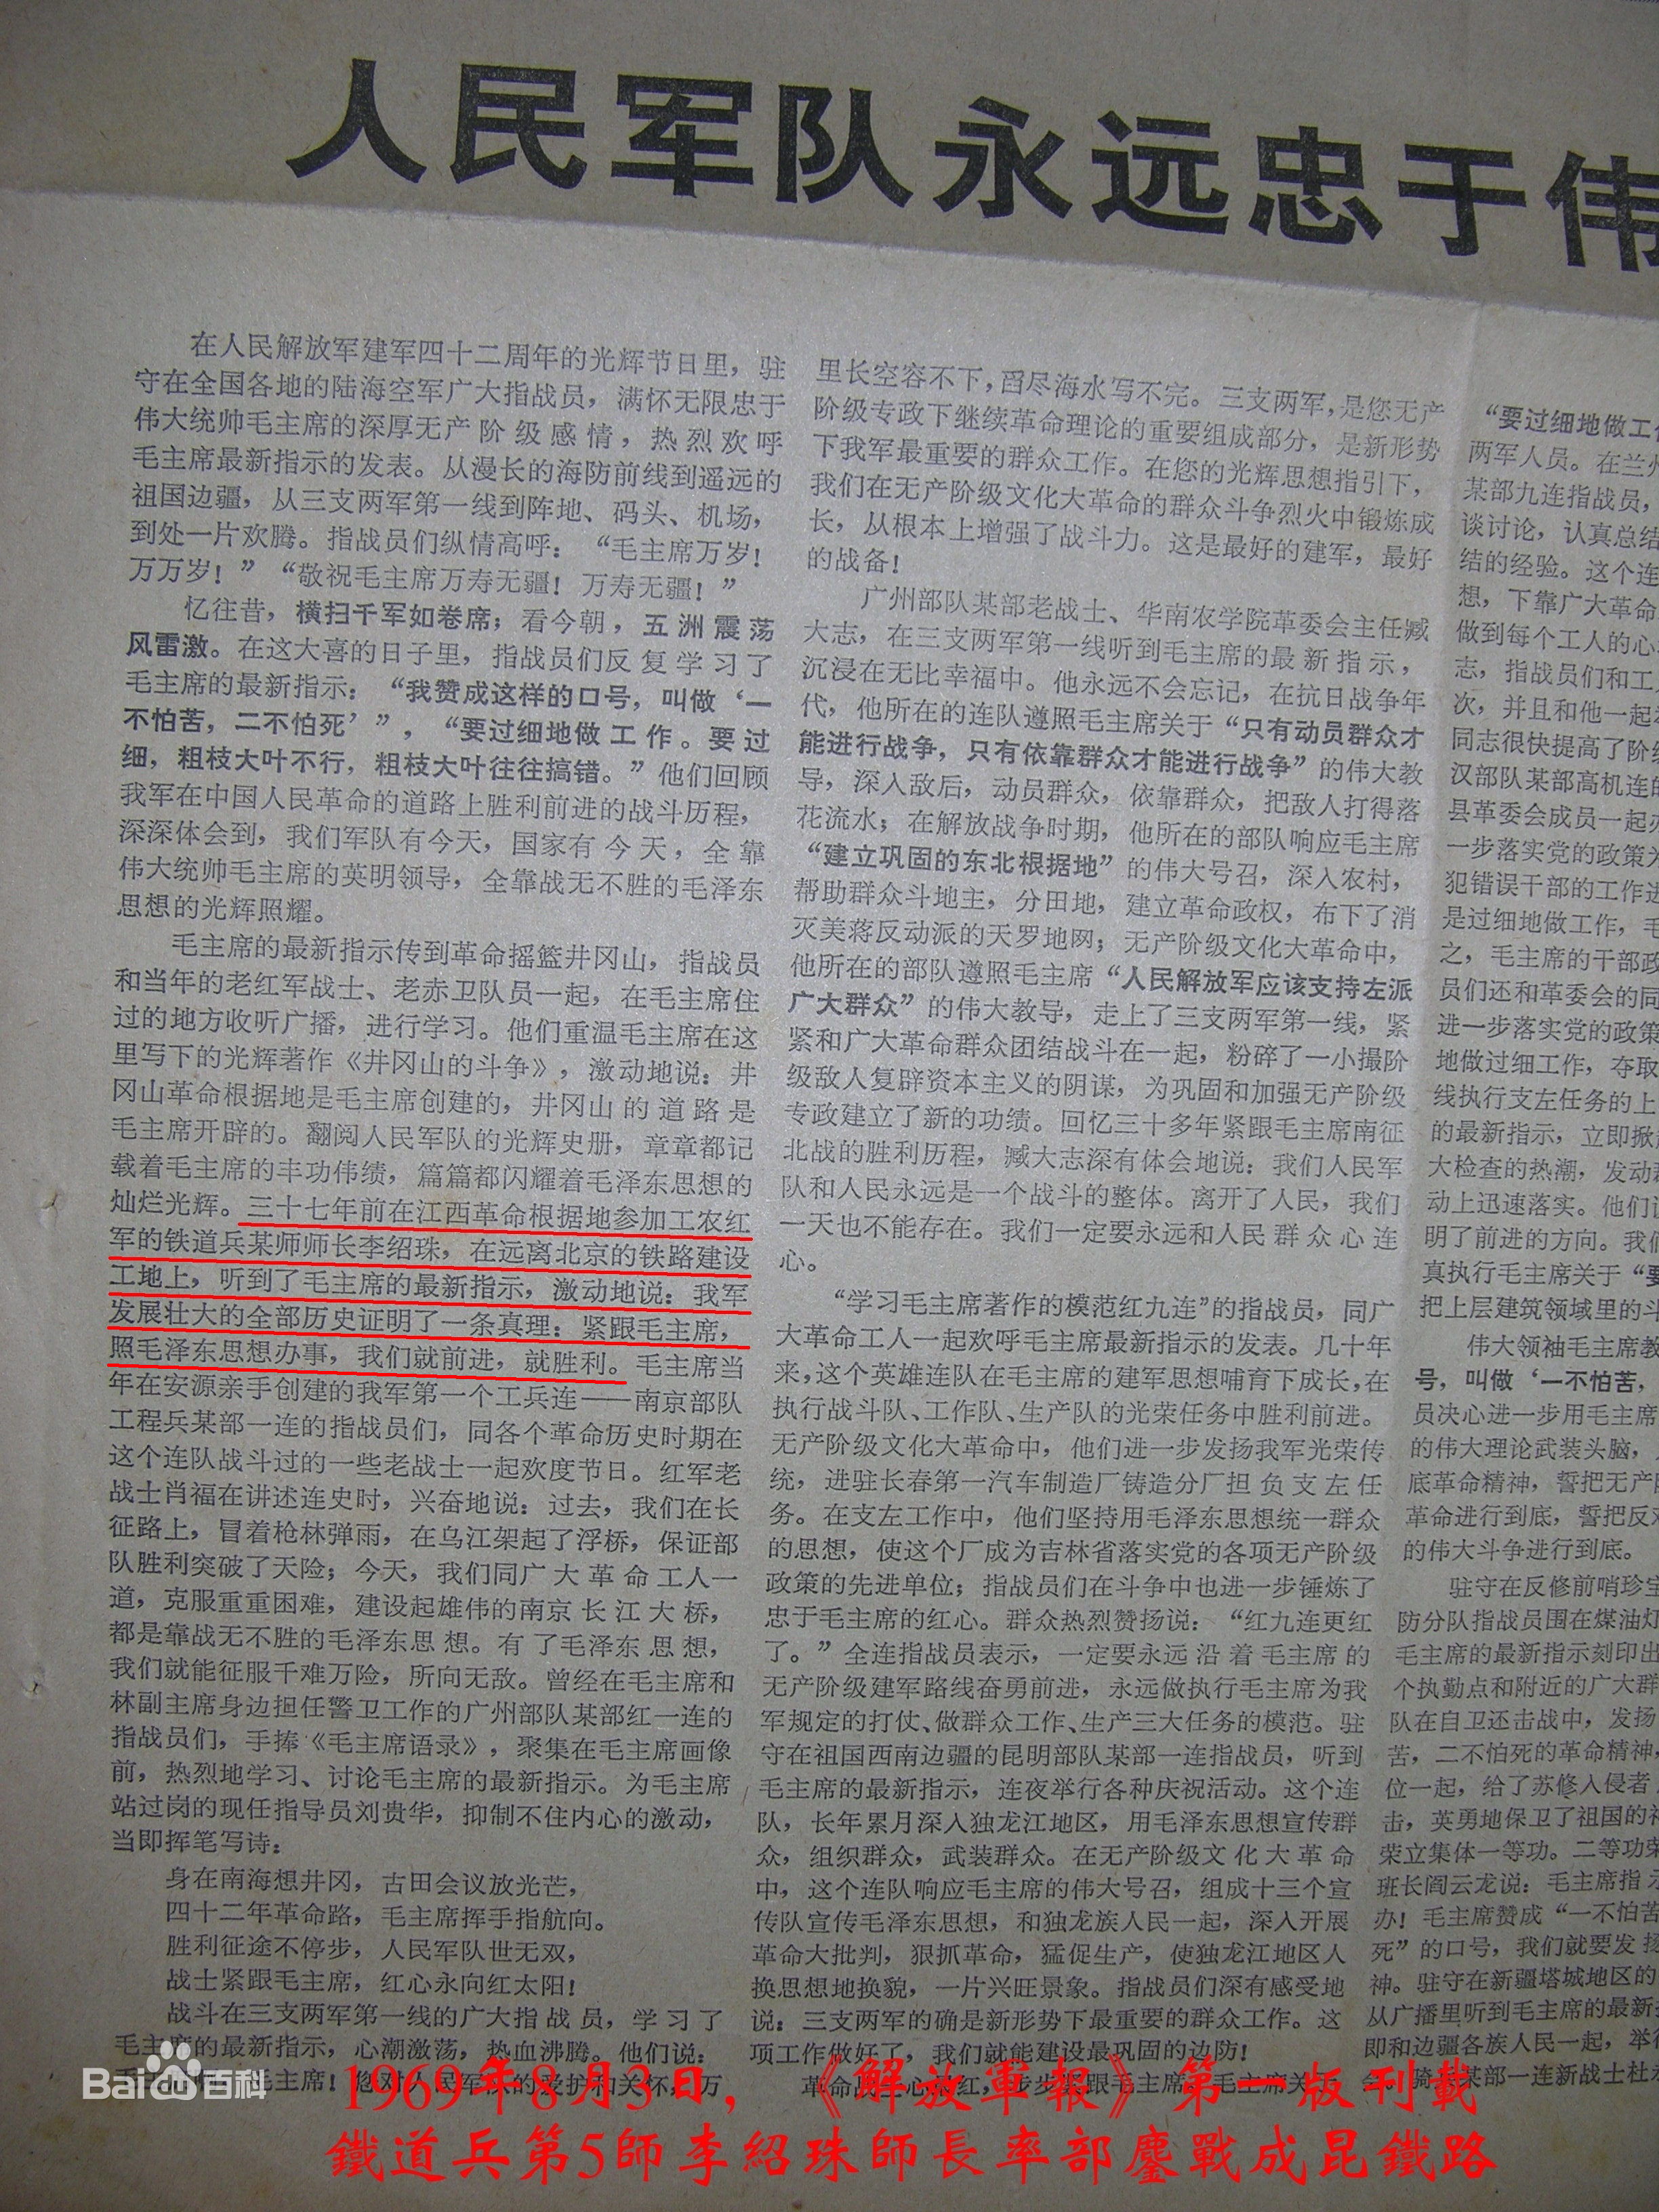 1969年8月3日《解放軍報》第一版，報導鐵道兵第五師師長李紹珠